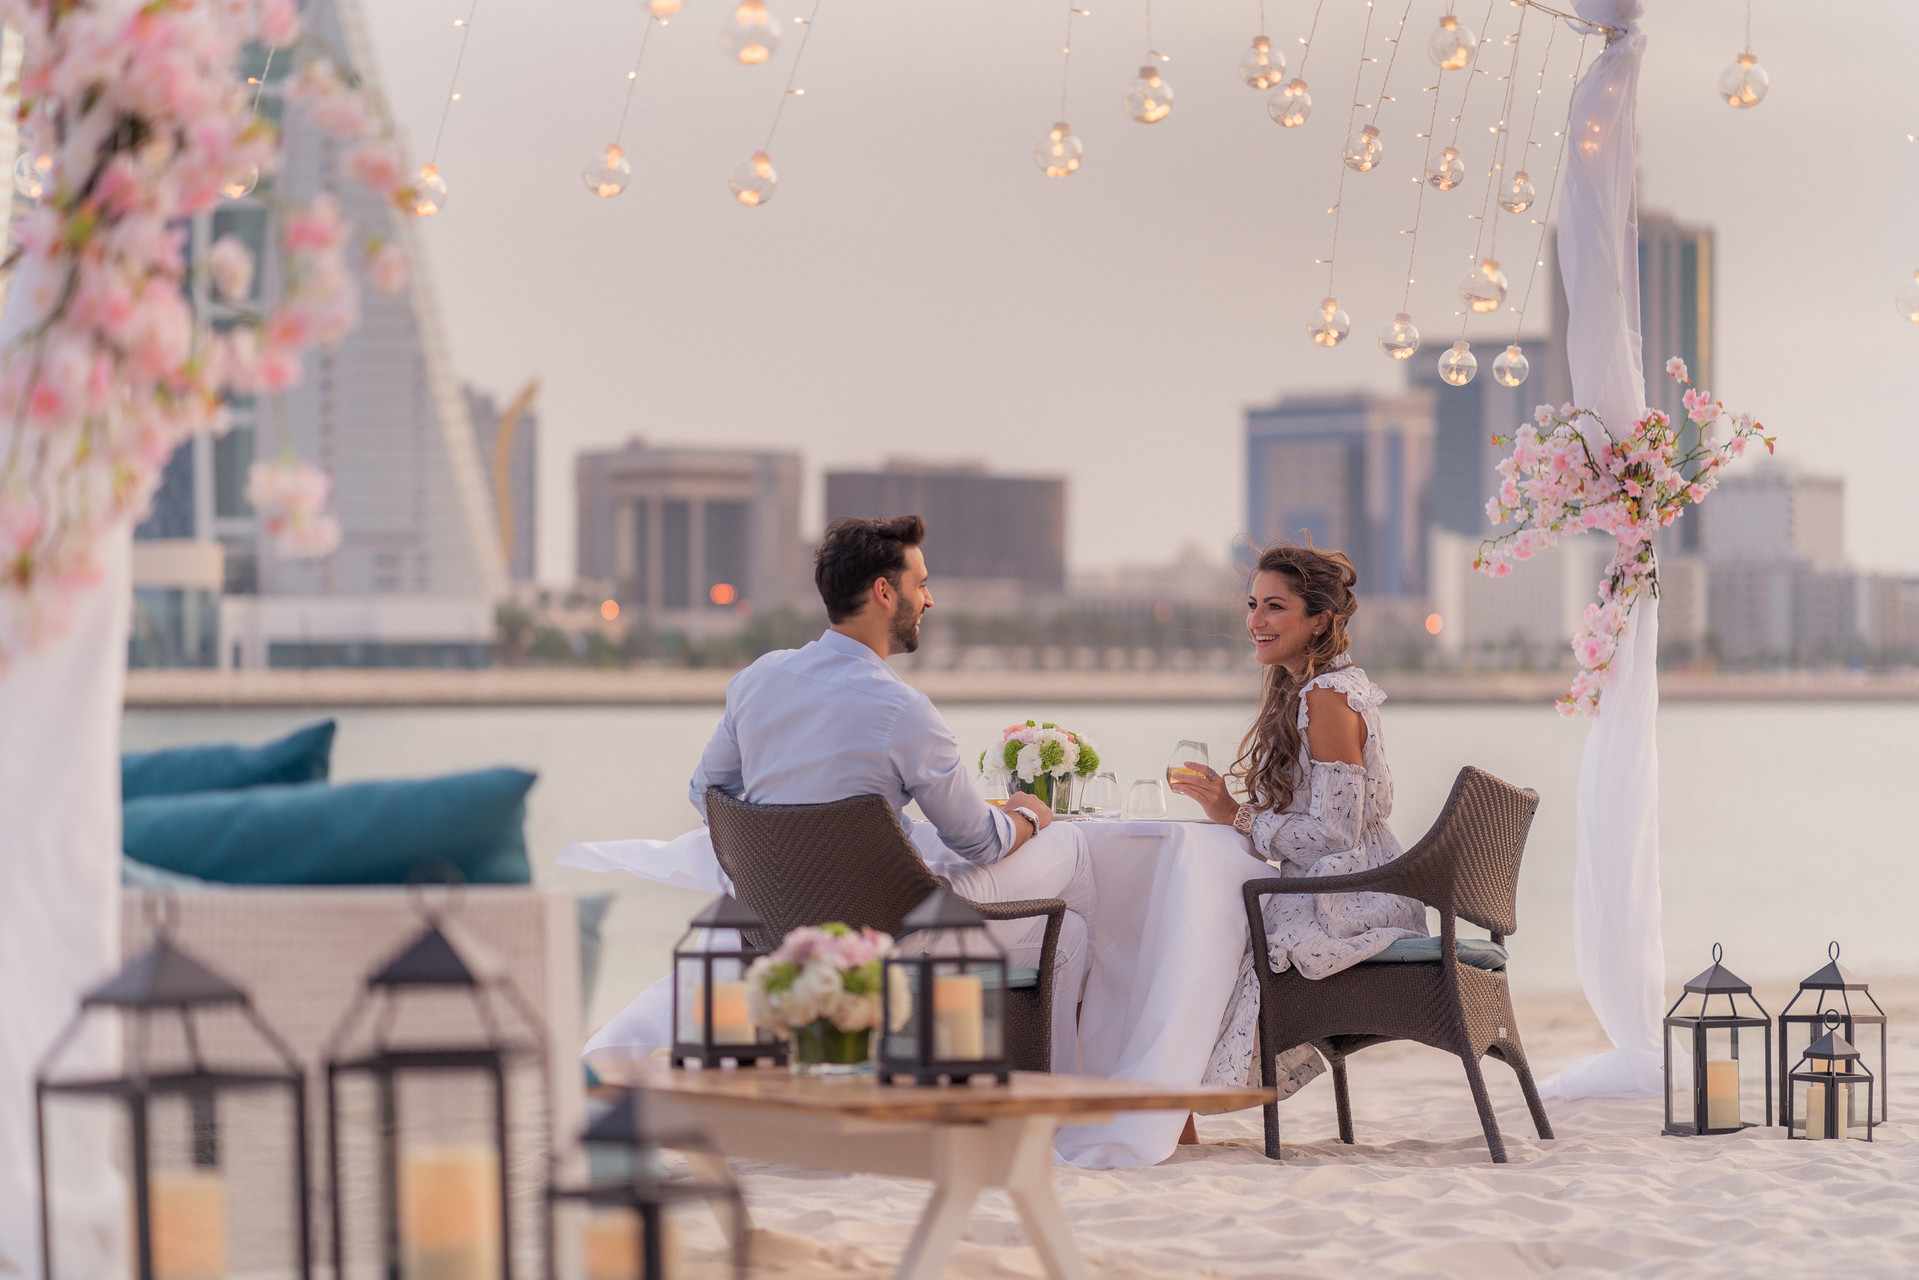 bahrain,hotel,Bahrain,valentines,romance